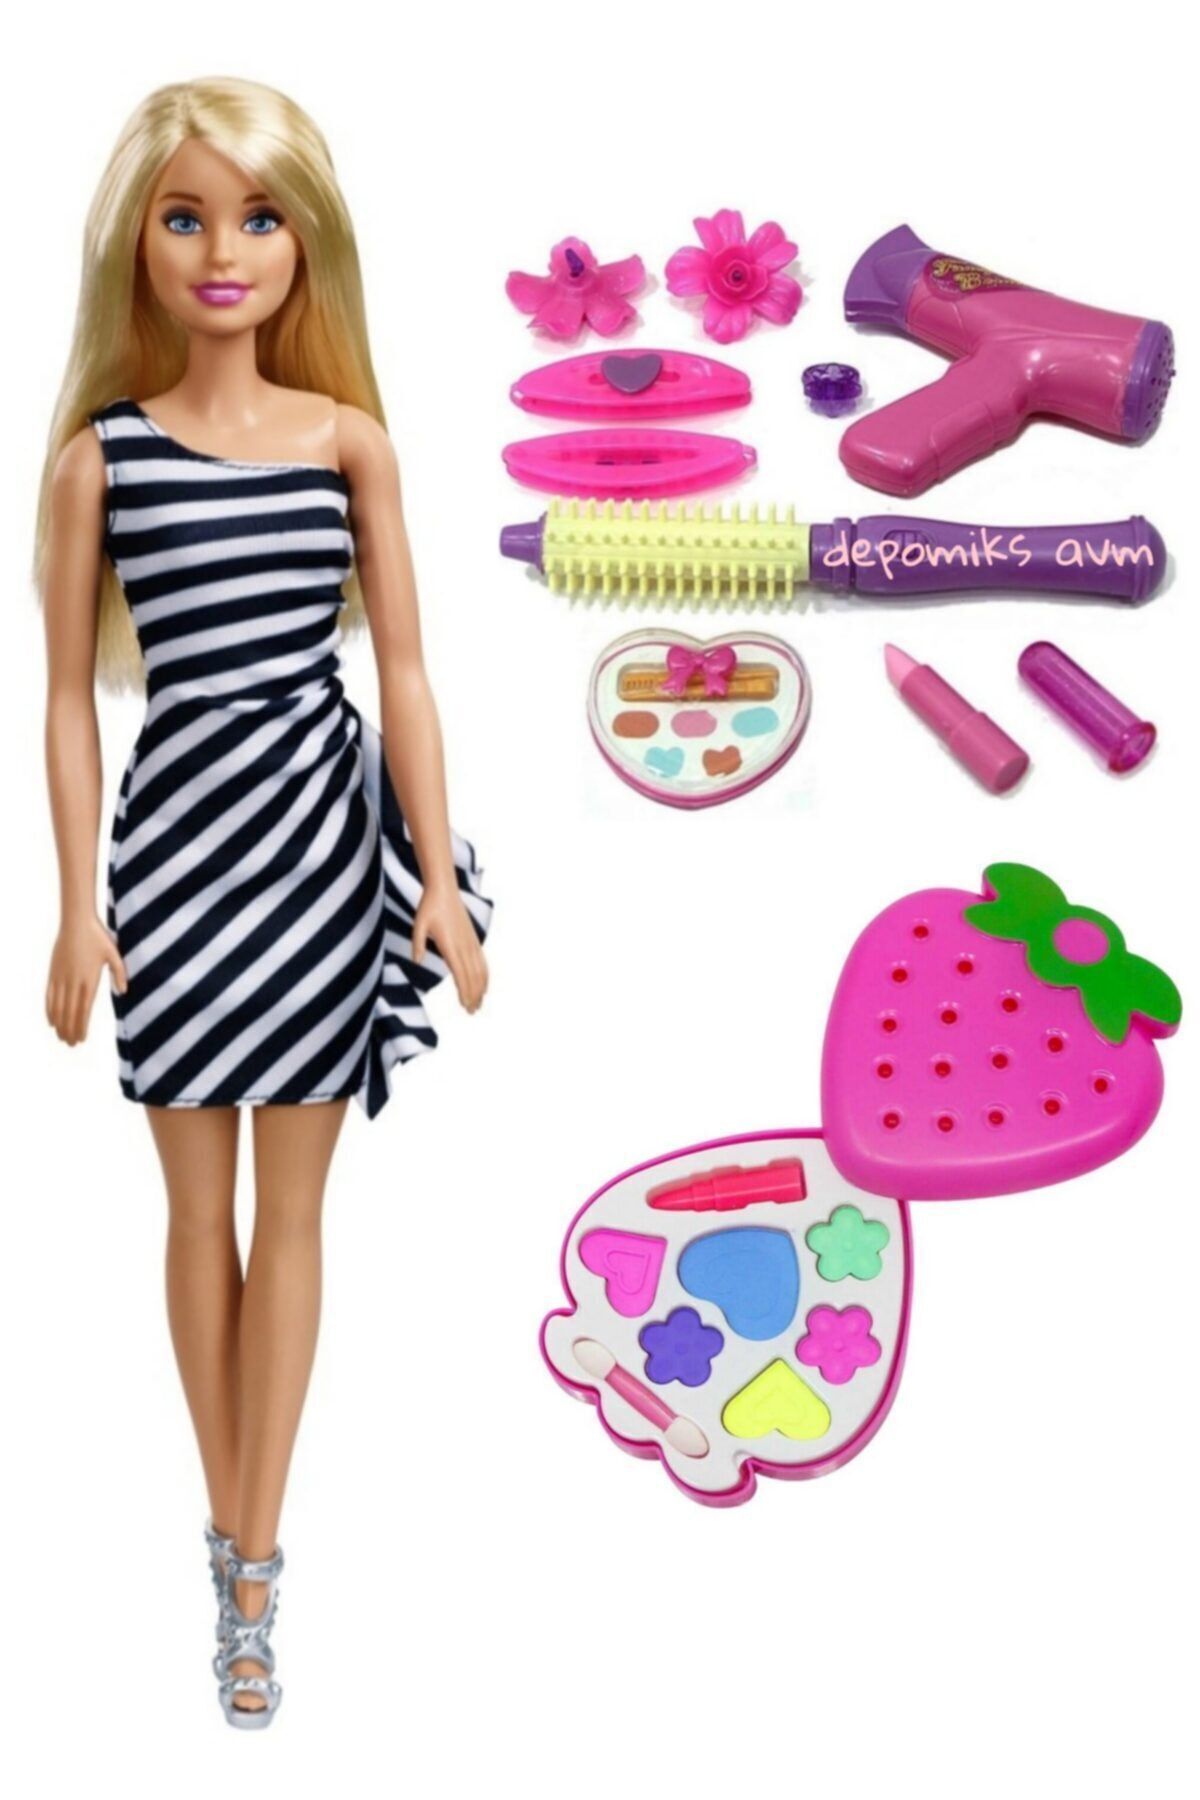 Depomiks Avm Pırıltılı Barbie Bebek + Çilek Sürülebilir Makyaj Seti + Çantalı Aksesuar Barbie Şık Elbiseli Bebek